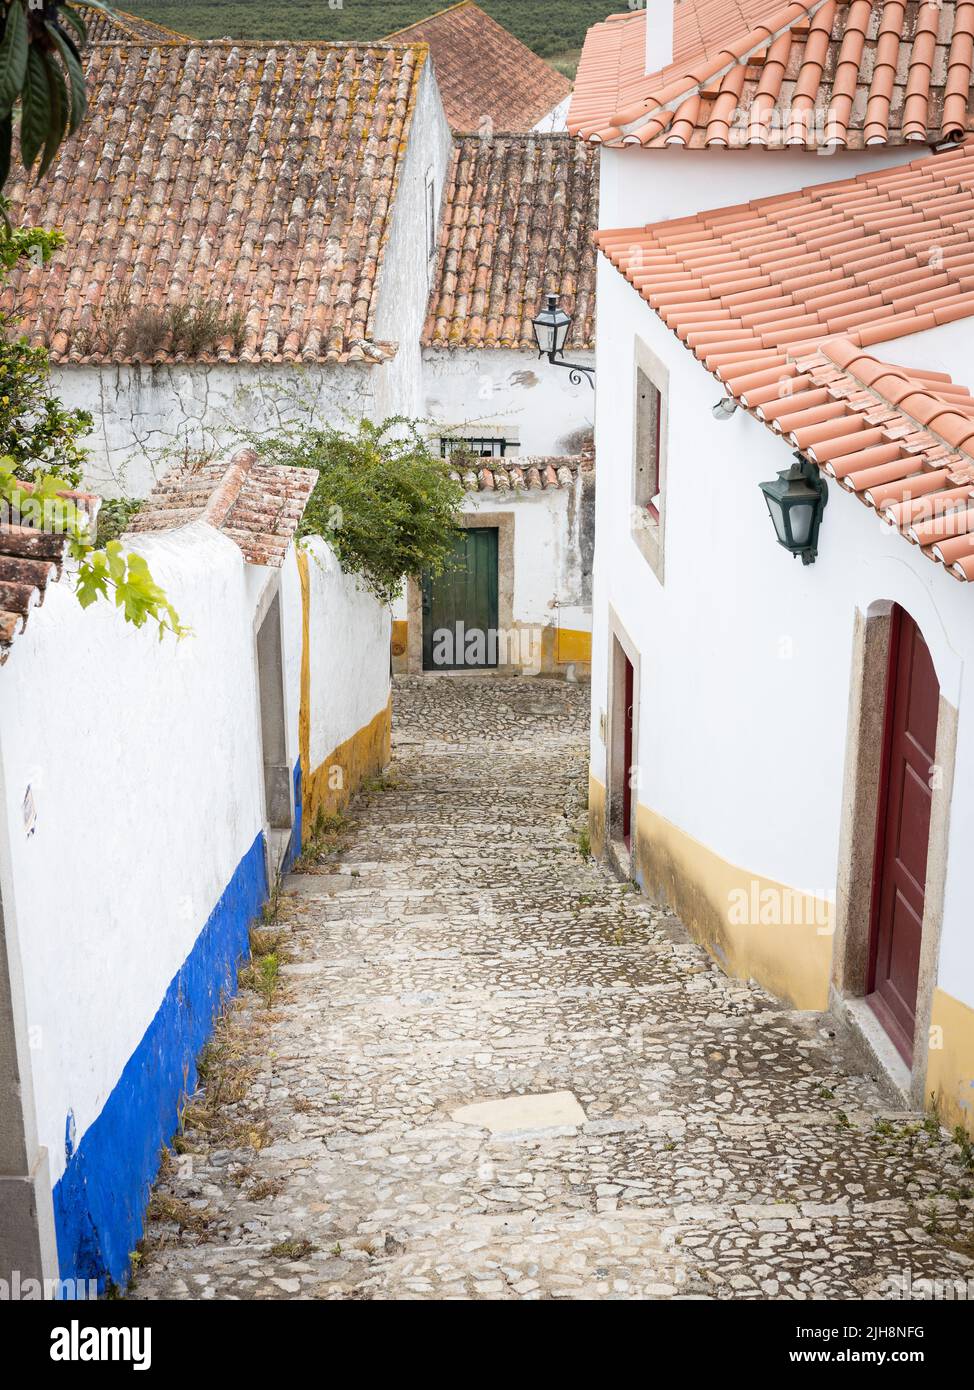 La ciudad de Óbidos, Portugal: Empinado callejón entre antiguas casas blancas. Foto de stock